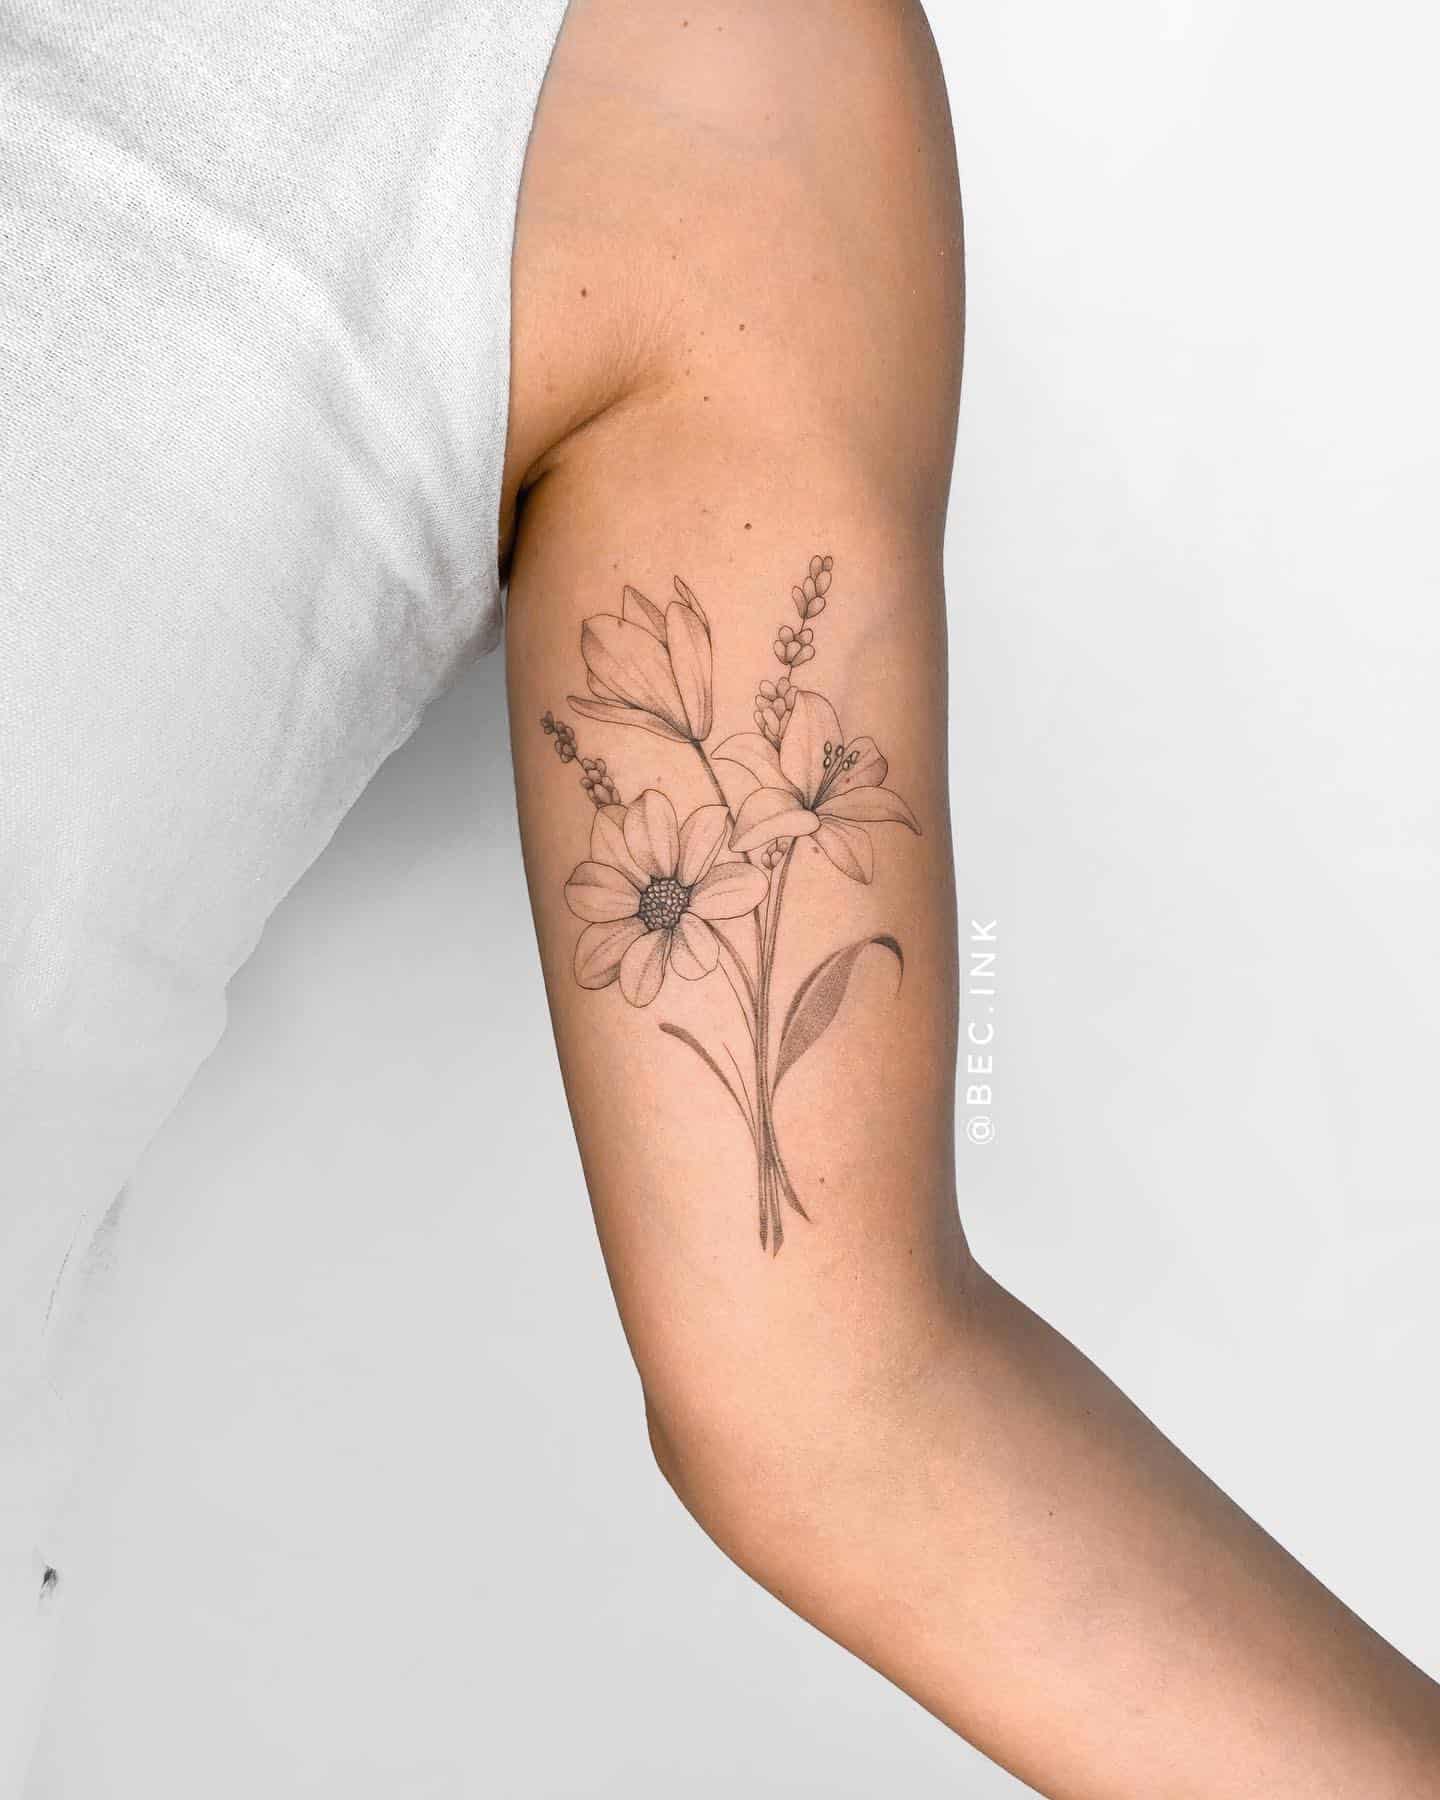 Beautiful simple flower tattoos and tattoo designs  Birth flower tattoos  Simple flower tattoo Delicate flower tattoo